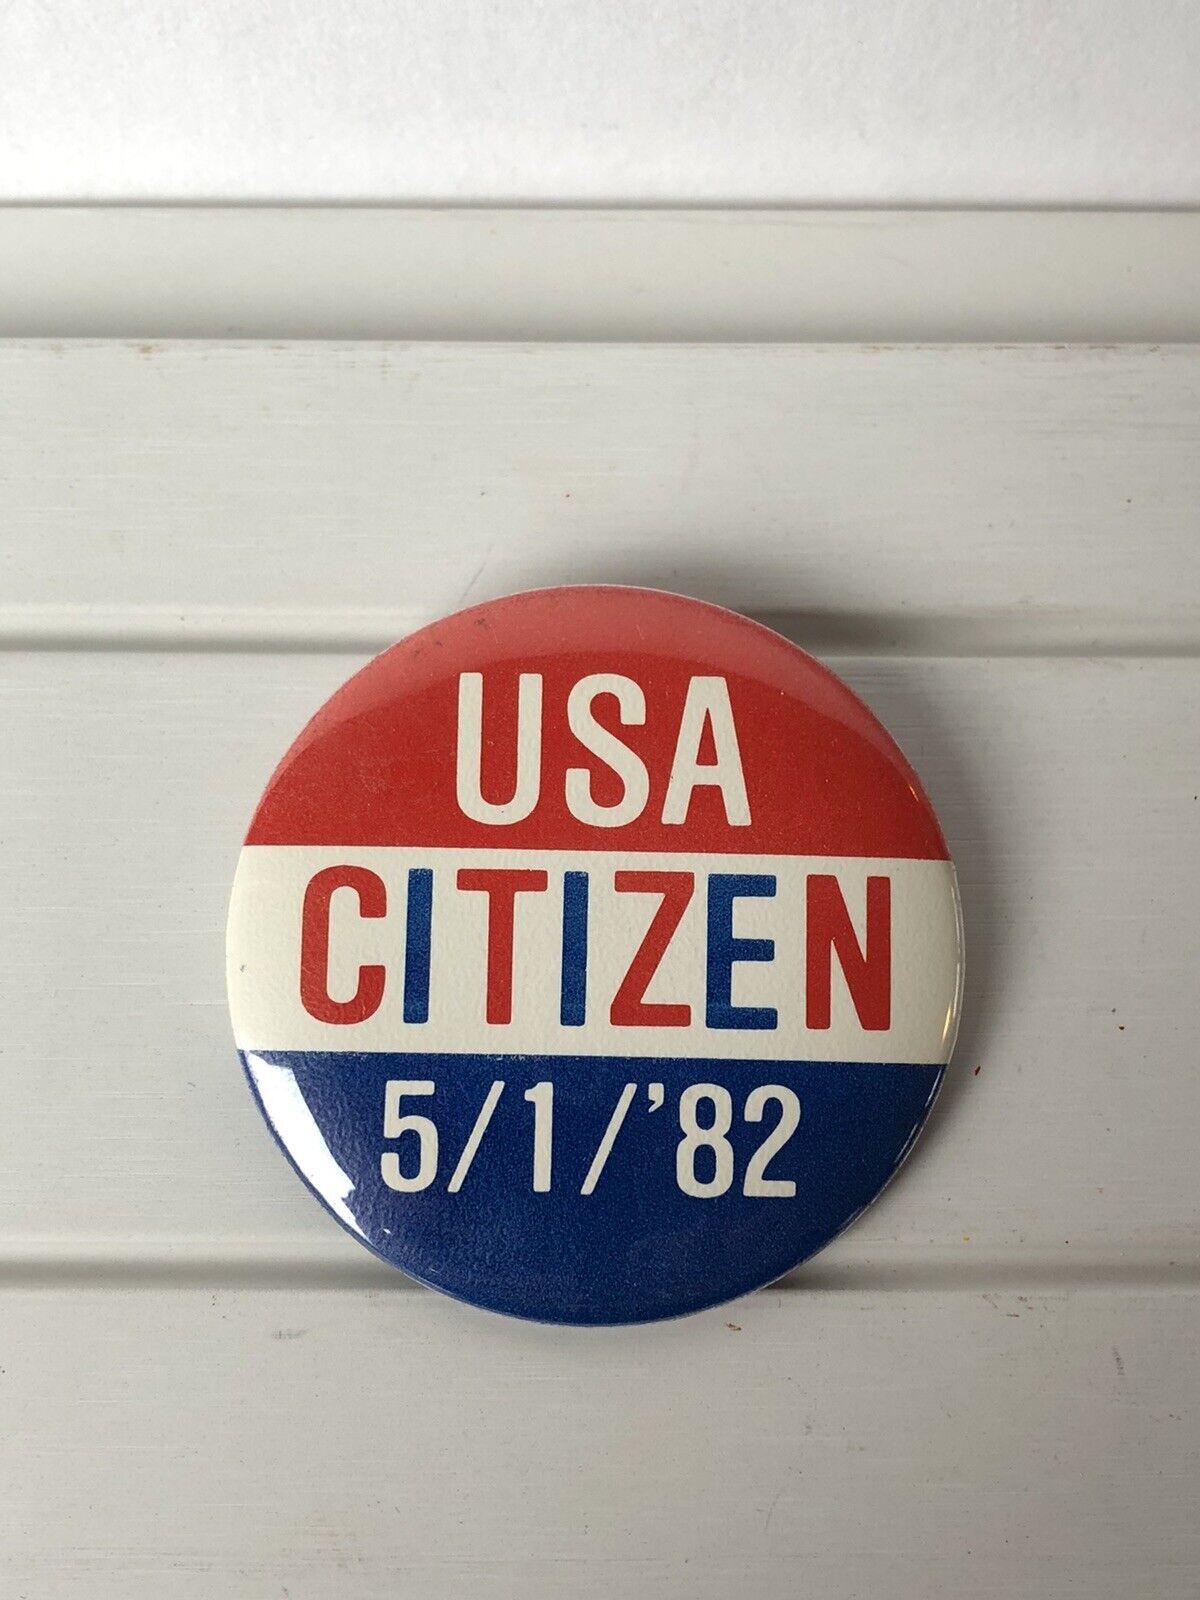 Vintage USA Citizen 5/1/‘82 Button Pin